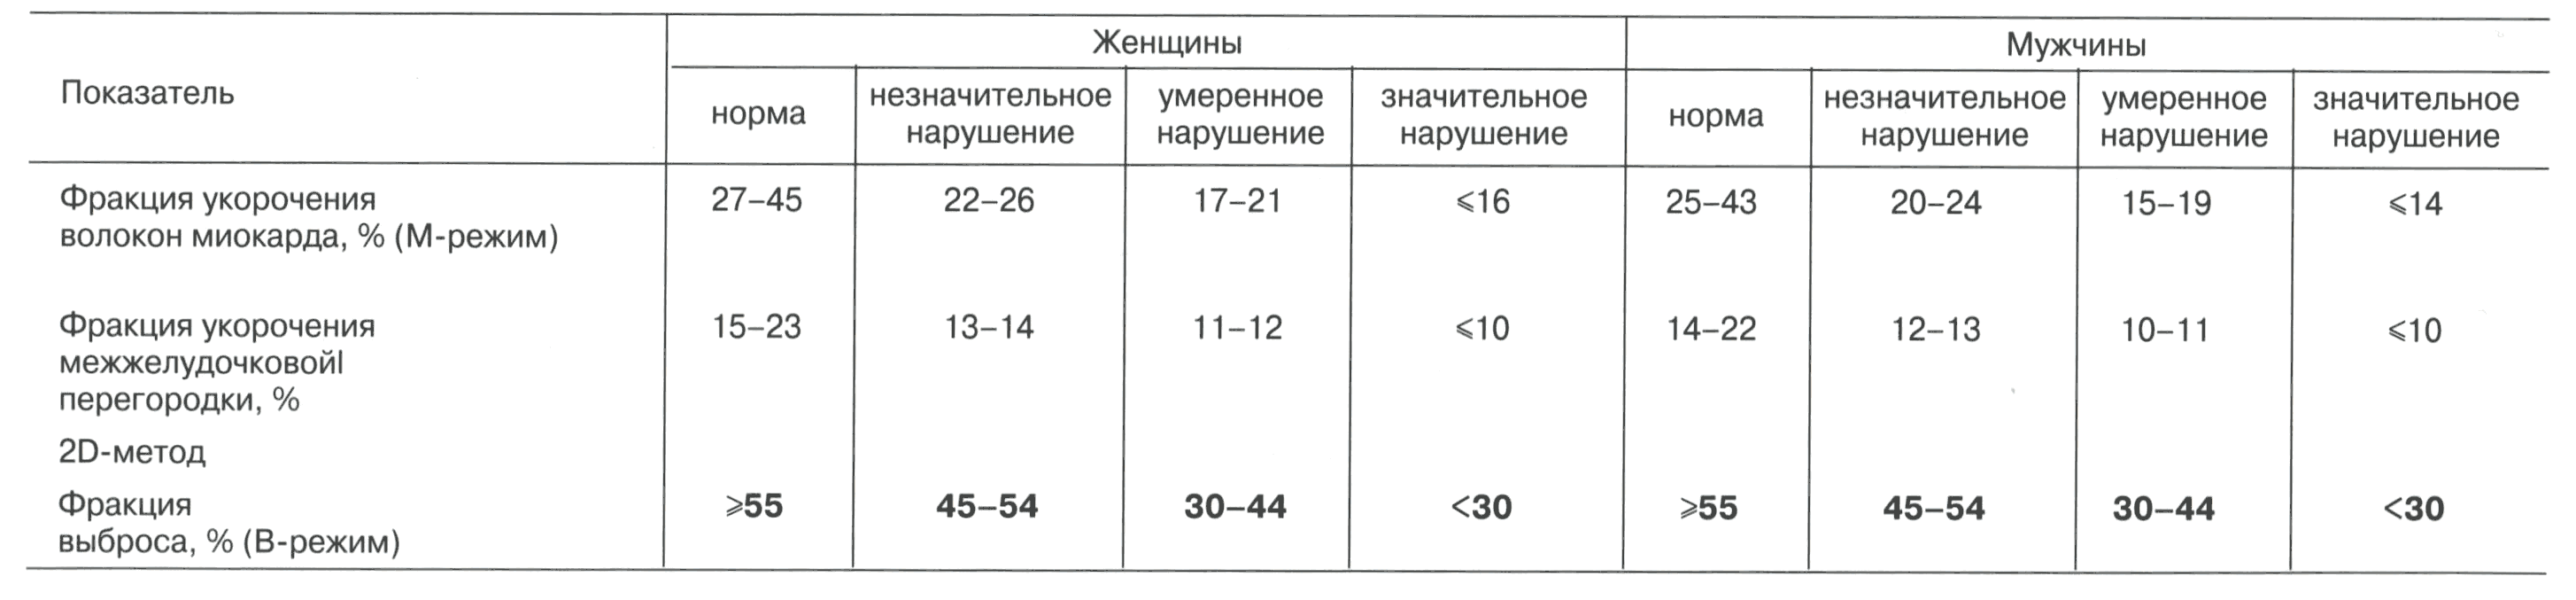 Таблица 2.4. Линейные измерения и объемы левого желудочка в диастолу и систолу